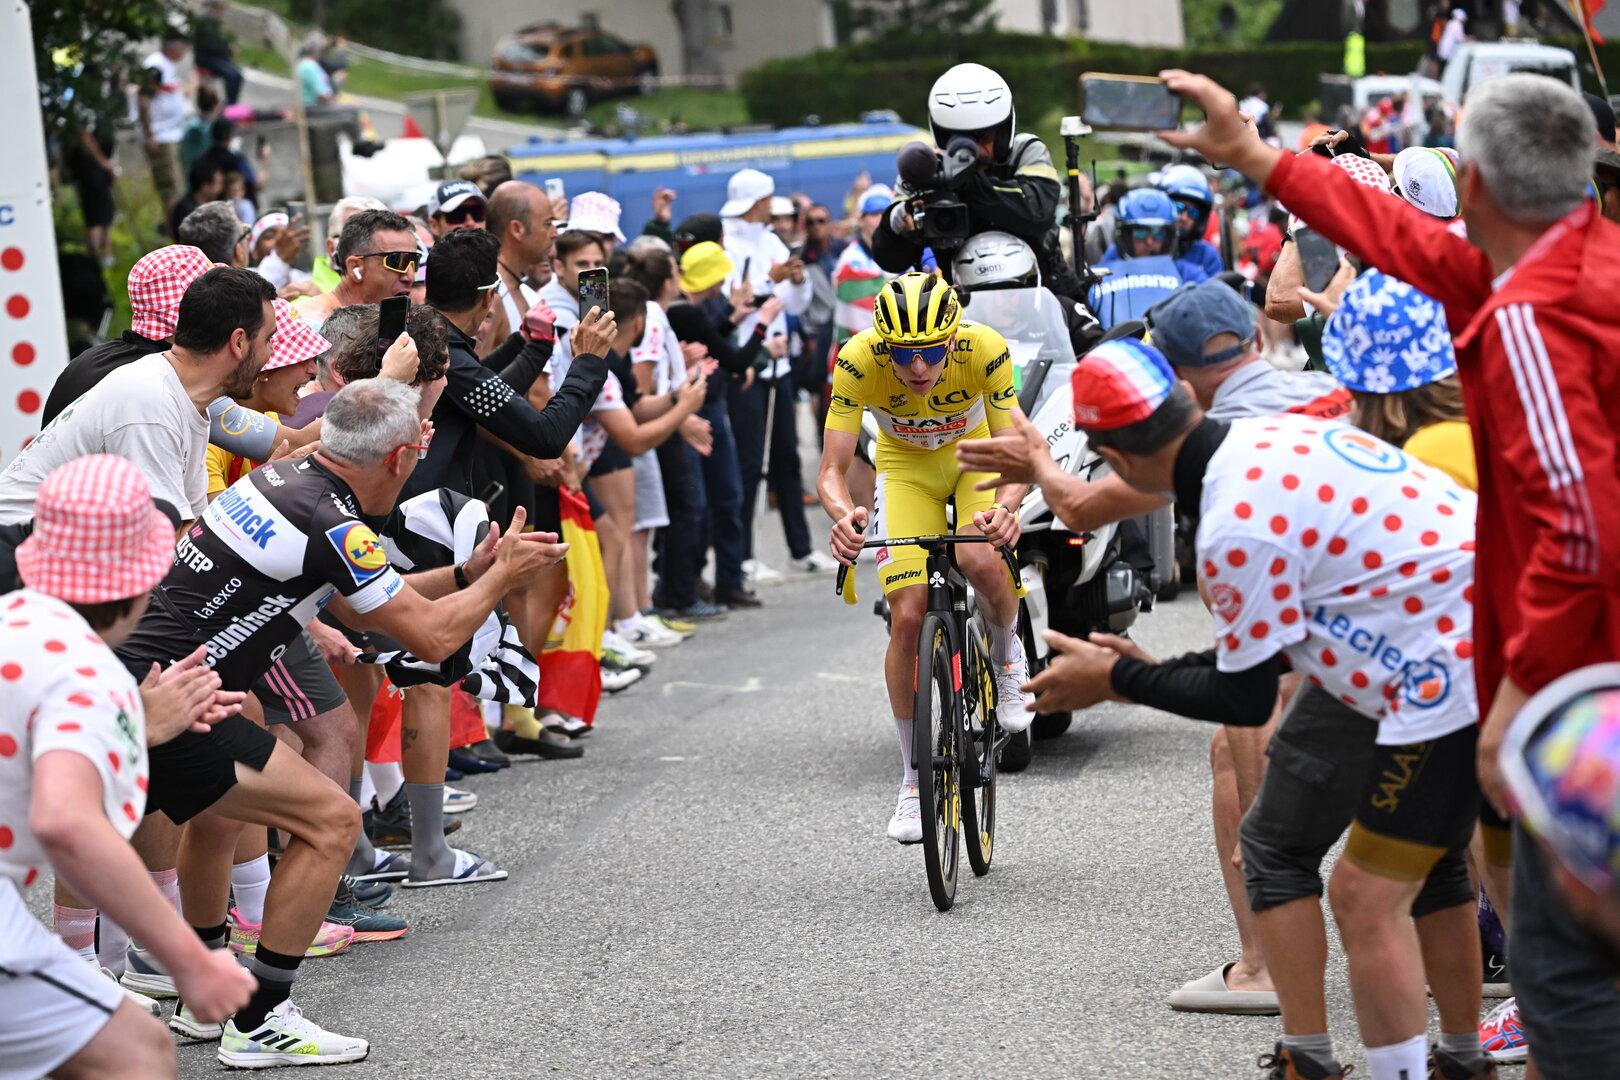 Ärger bei der Tour de France: Top-Stars mit Chips beworfen